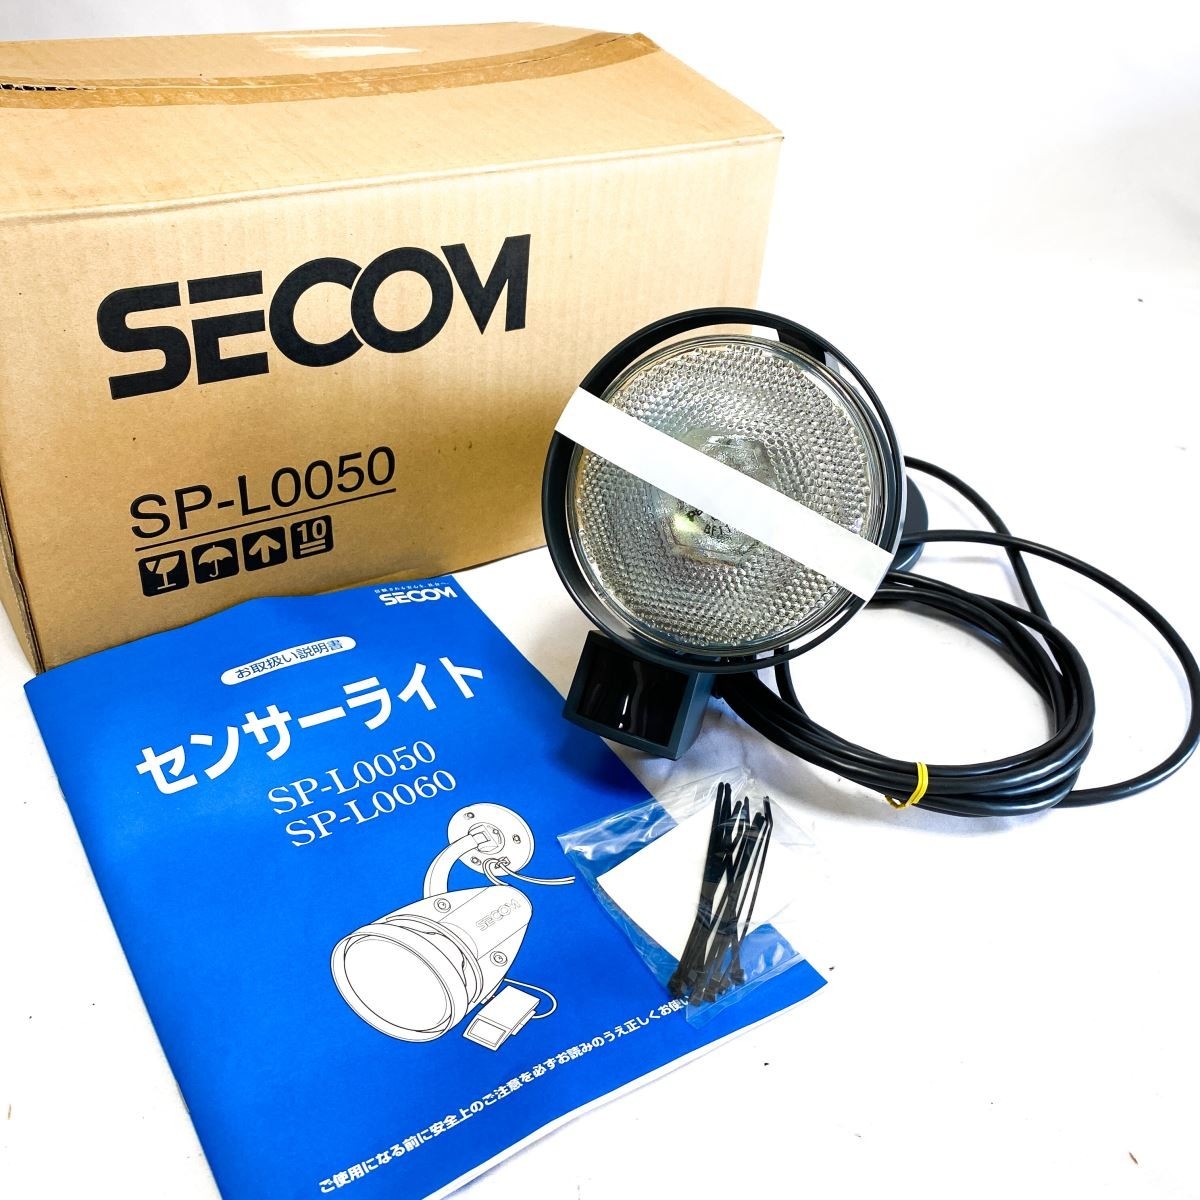 【新品未使用】SECOM SP-L0050 セコム センサーライト 屋外屋内兼用 明るさ 点灯時間 調整 防犯 ライト 照明 元箱入り 取扱説明書 H627